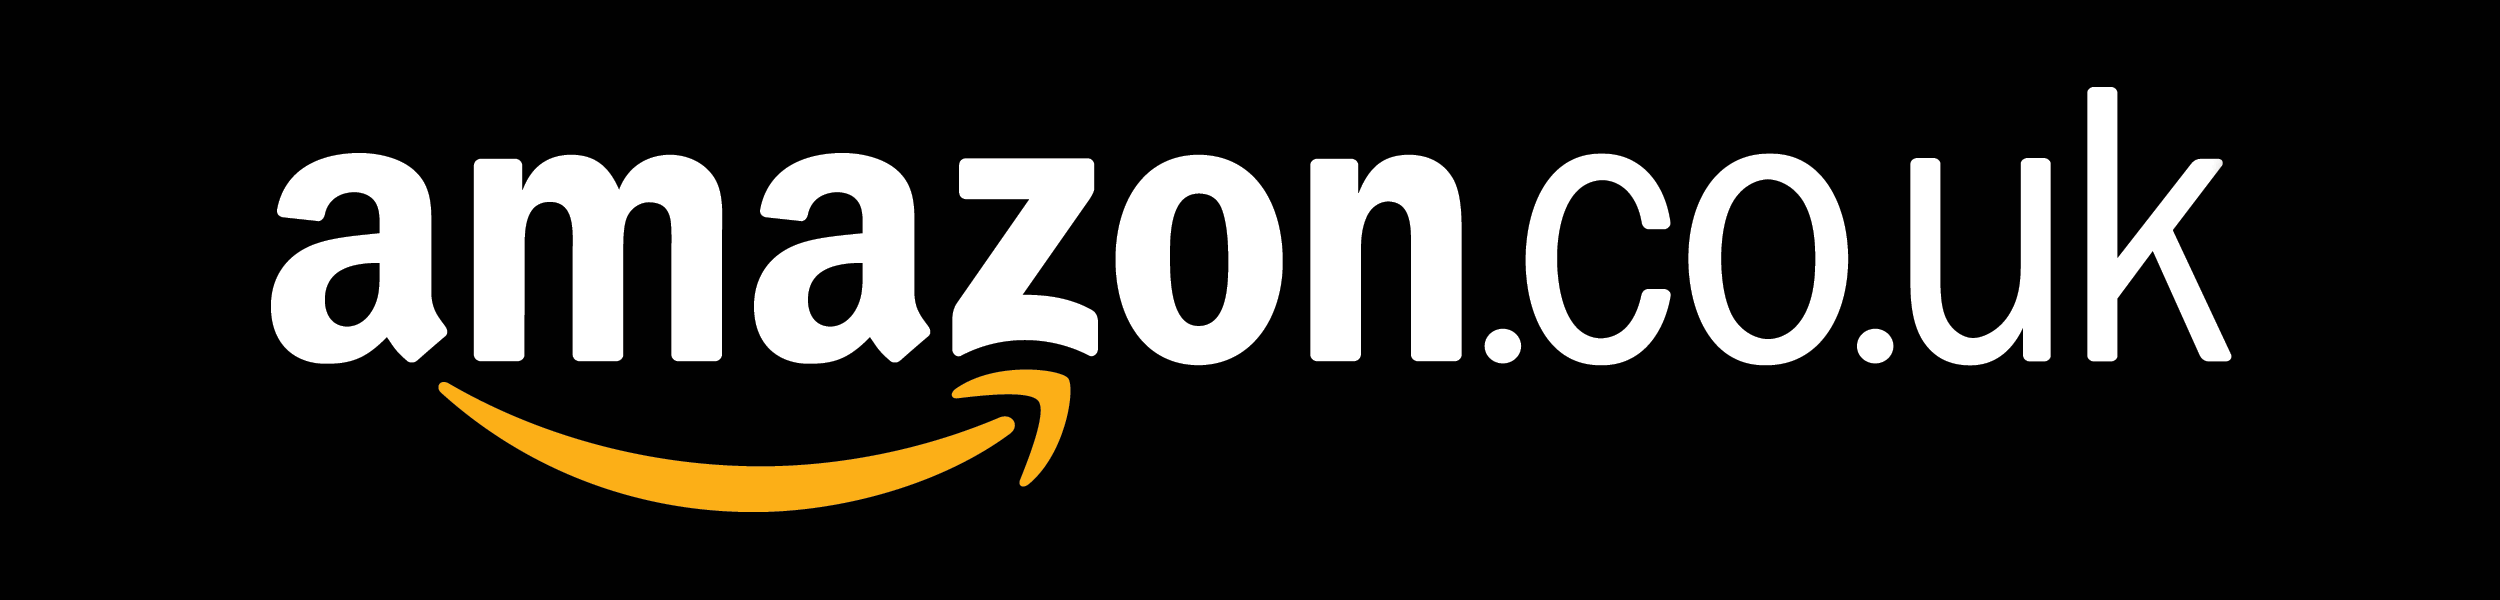 Amazon.co.uk Logo - amazon co uk logo png. Clipart & Vectors